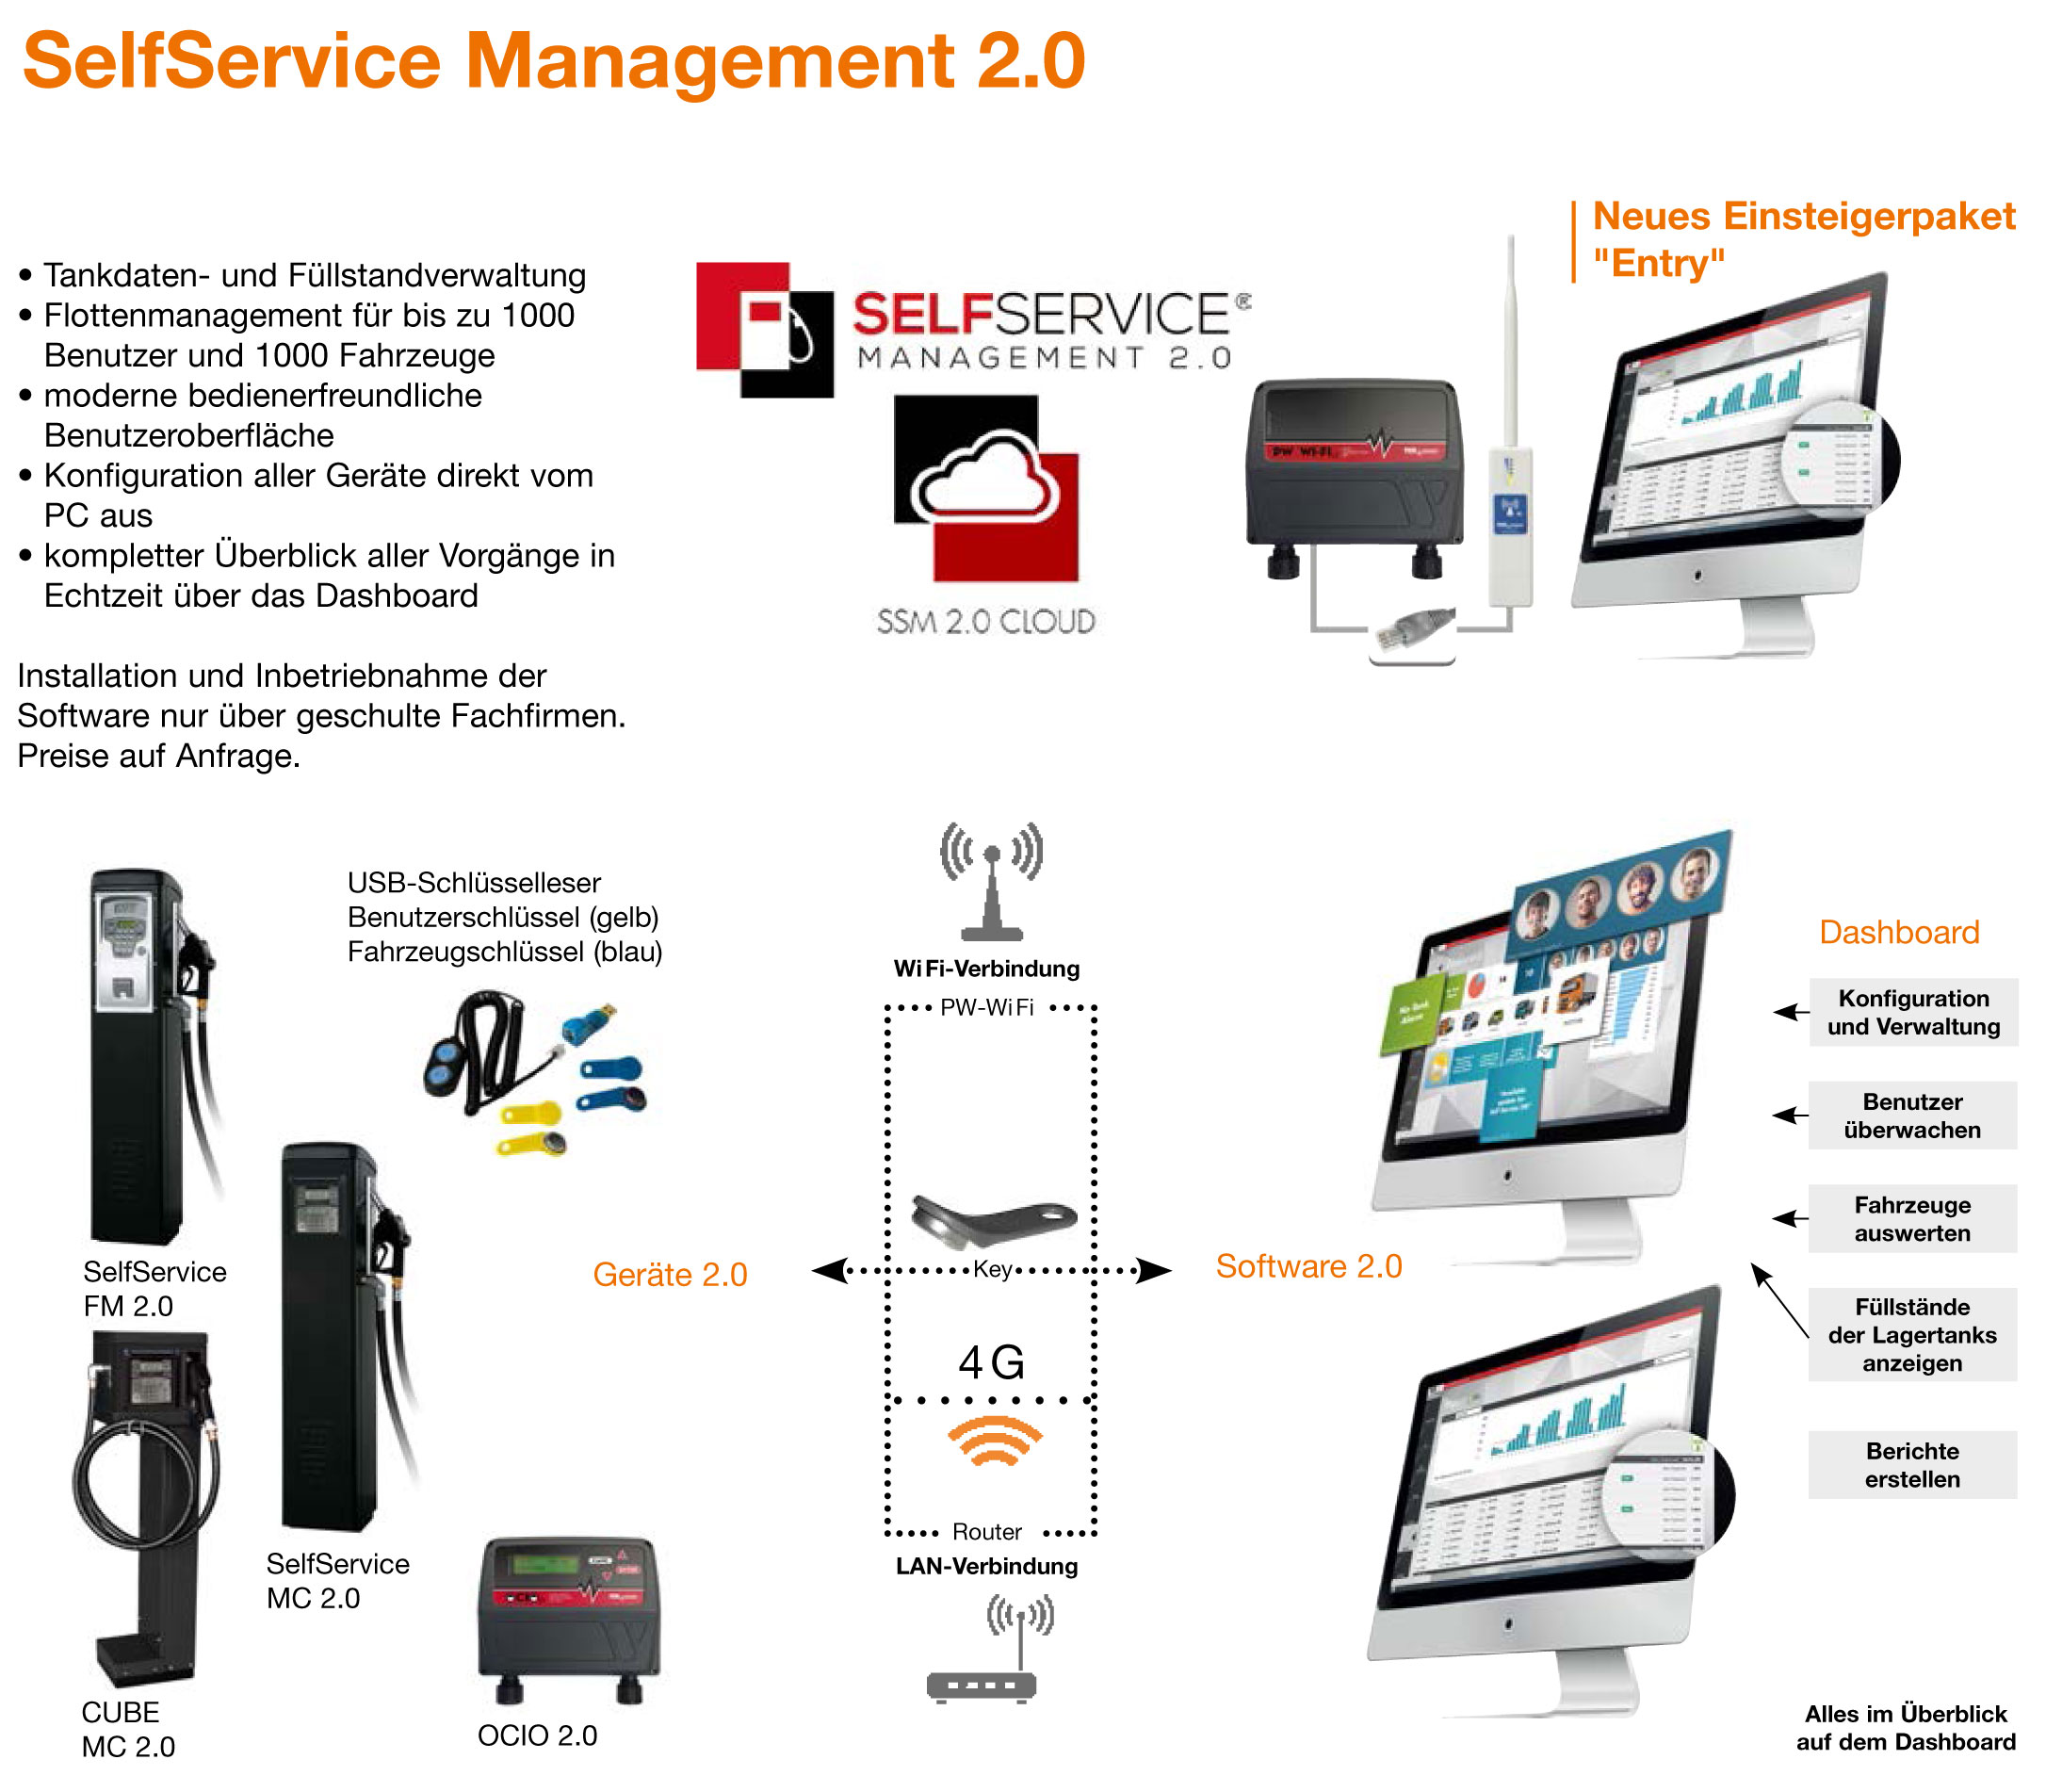 SelfService Management 2.0 in Verbindung mit Schnittstelle PW-LAN und PW-WIFI